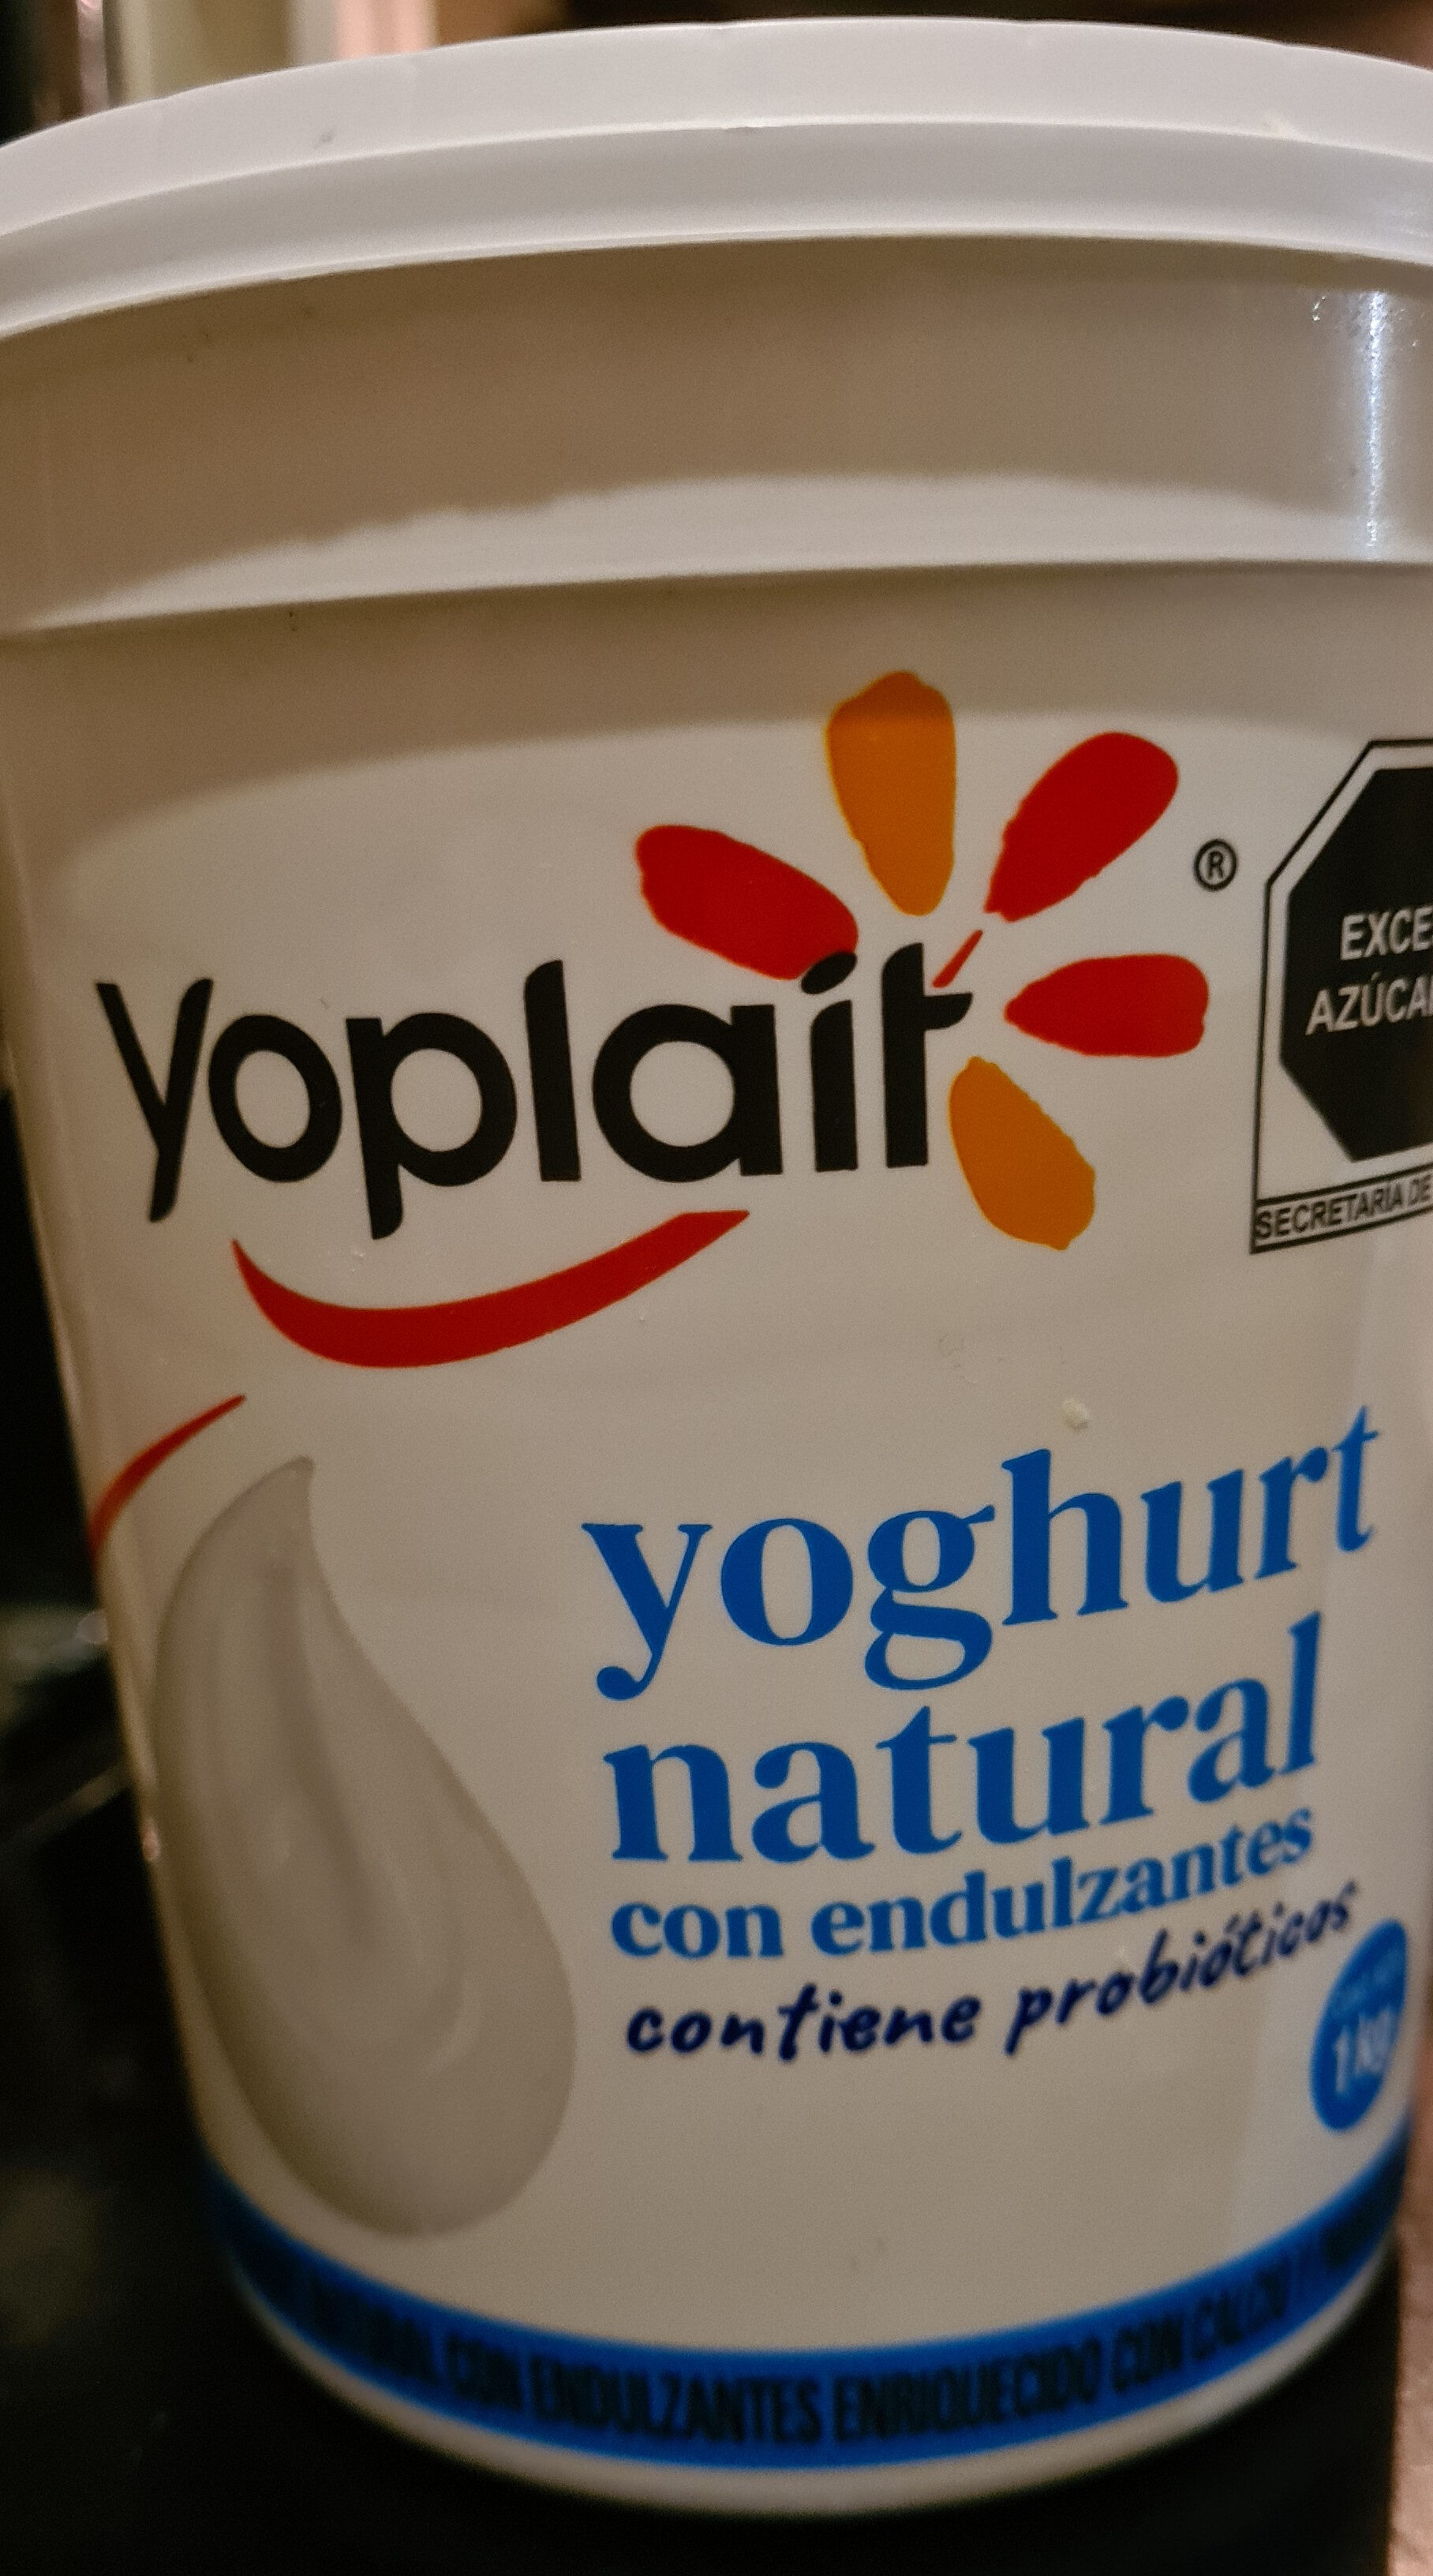 Yoghurt Natural con endulzantes enriquecido con calcio y probioticos - Producto